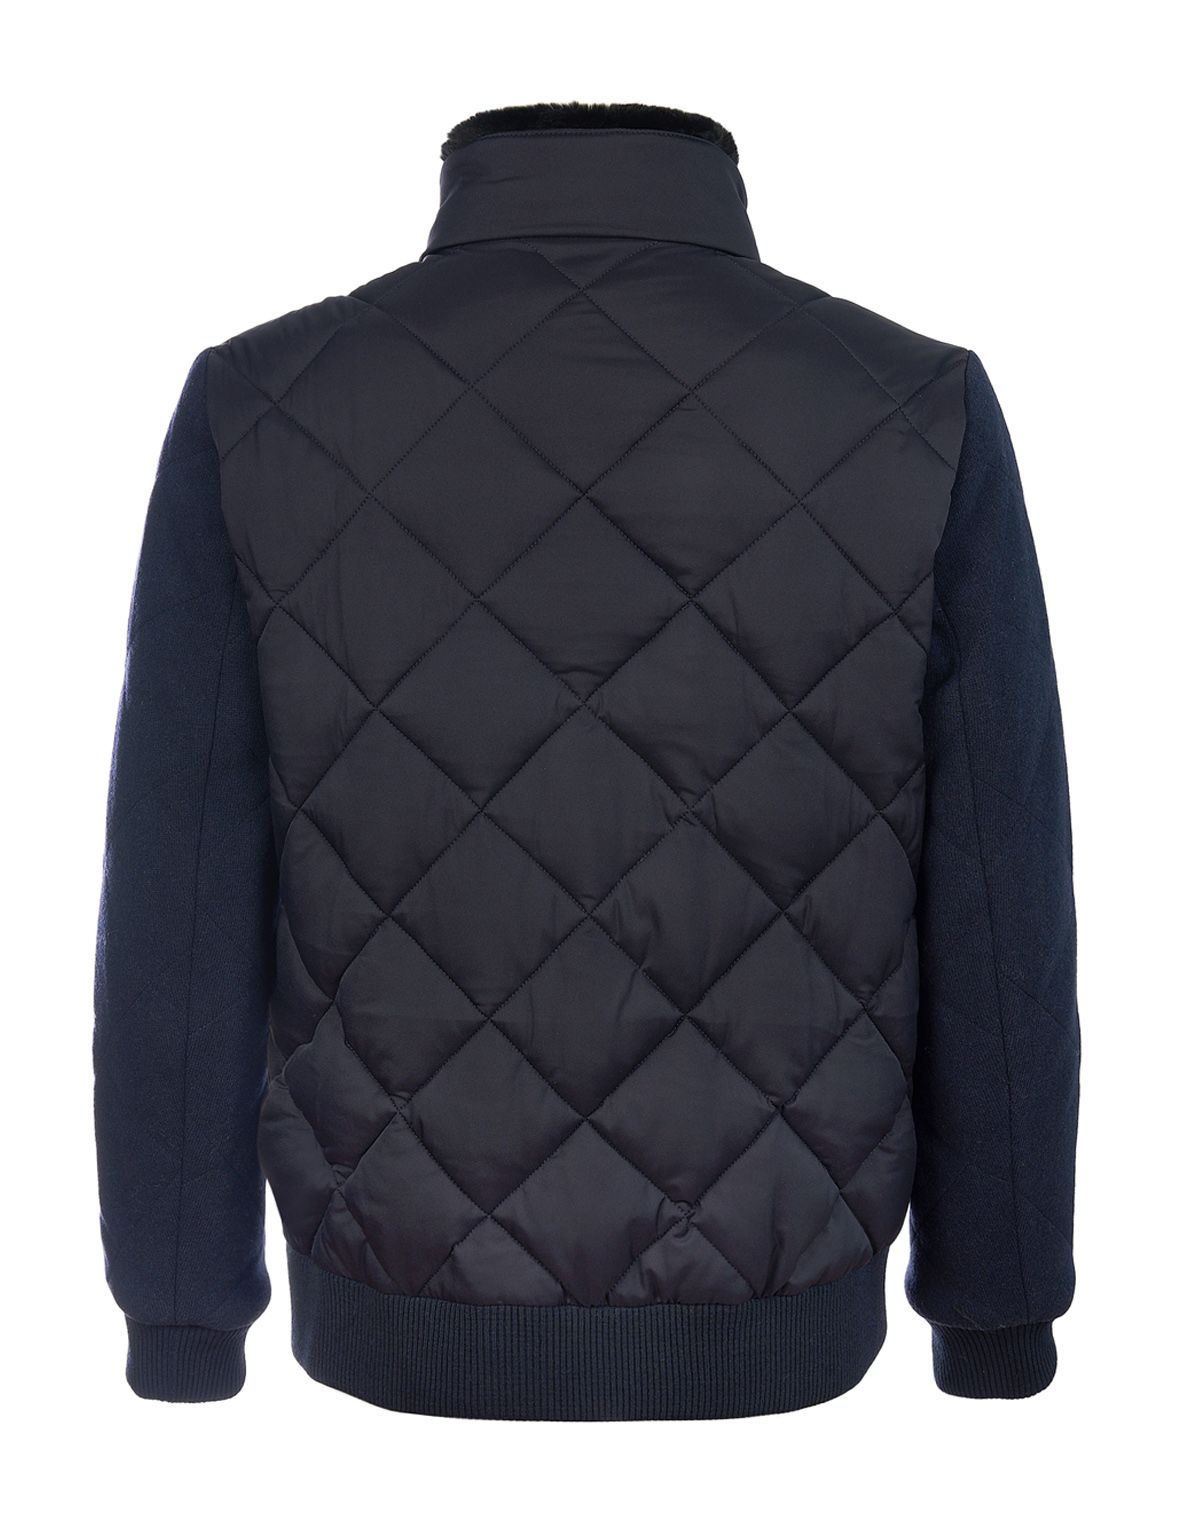 Куртка-бомбер пуховая мужская MEUCCI с меховым воротником | купить в интернет-магазине Olymp-Men